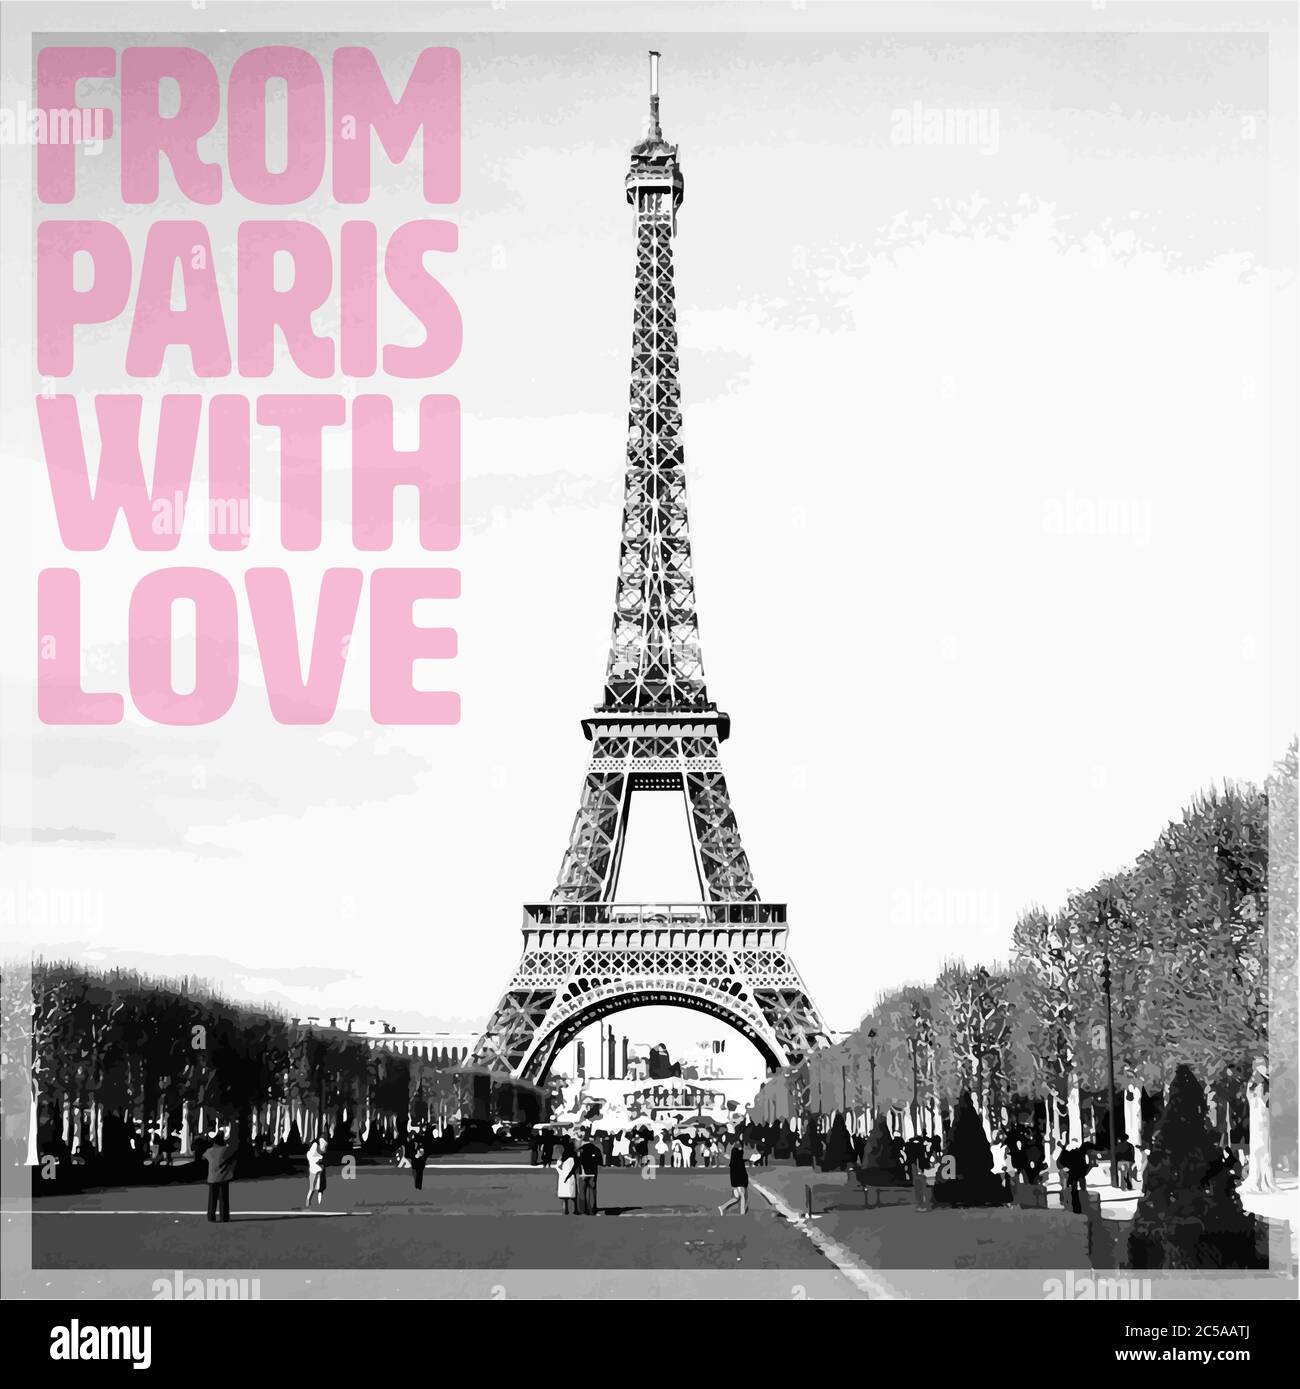 De Paris avec amour - carte romantique avec citation rose et photo vectorisée de la Tour Eiffel en noir et blanc, France, Europe Illustration de Vecteur